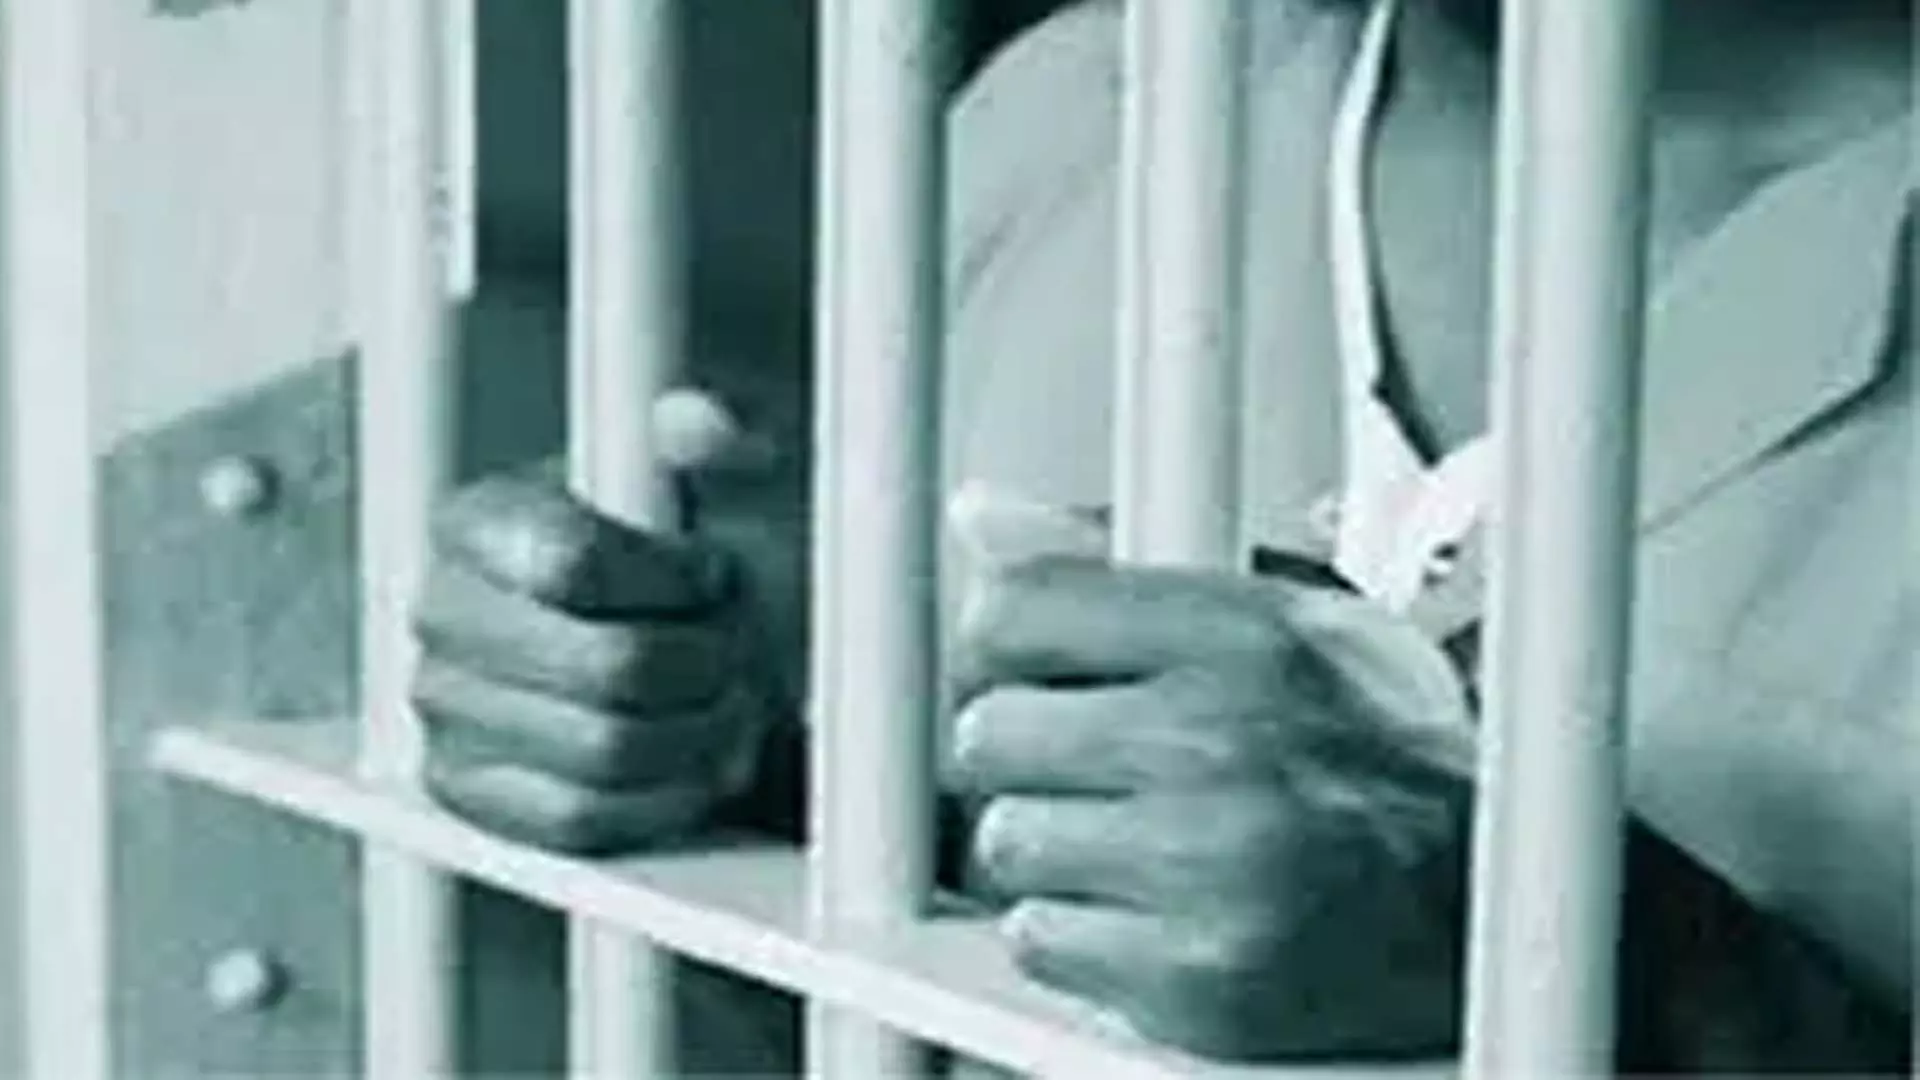 ड्रग तस्कर को 10 साल की सजा, 1 लाख रुपये का जुर्माना